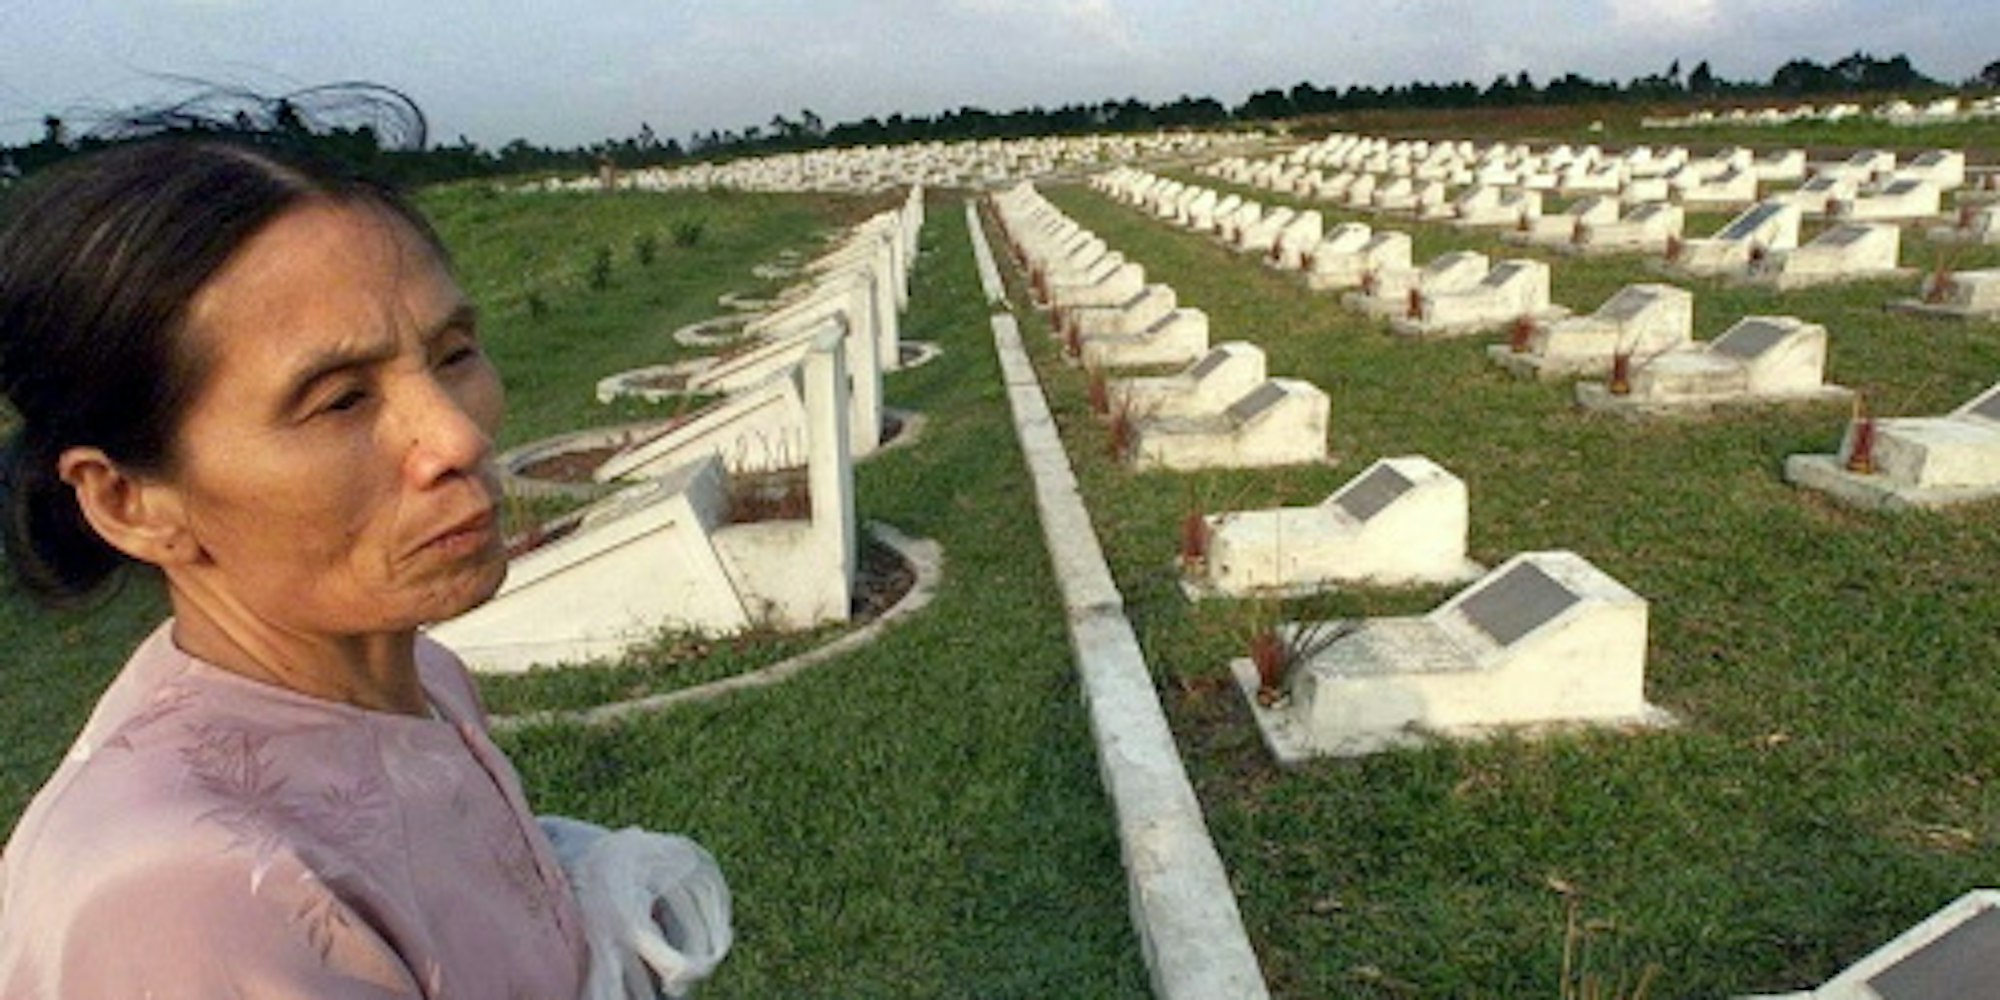 Der traurige Beleg für den Krieg: Ein Soldatenfriedhof in Vietnam.